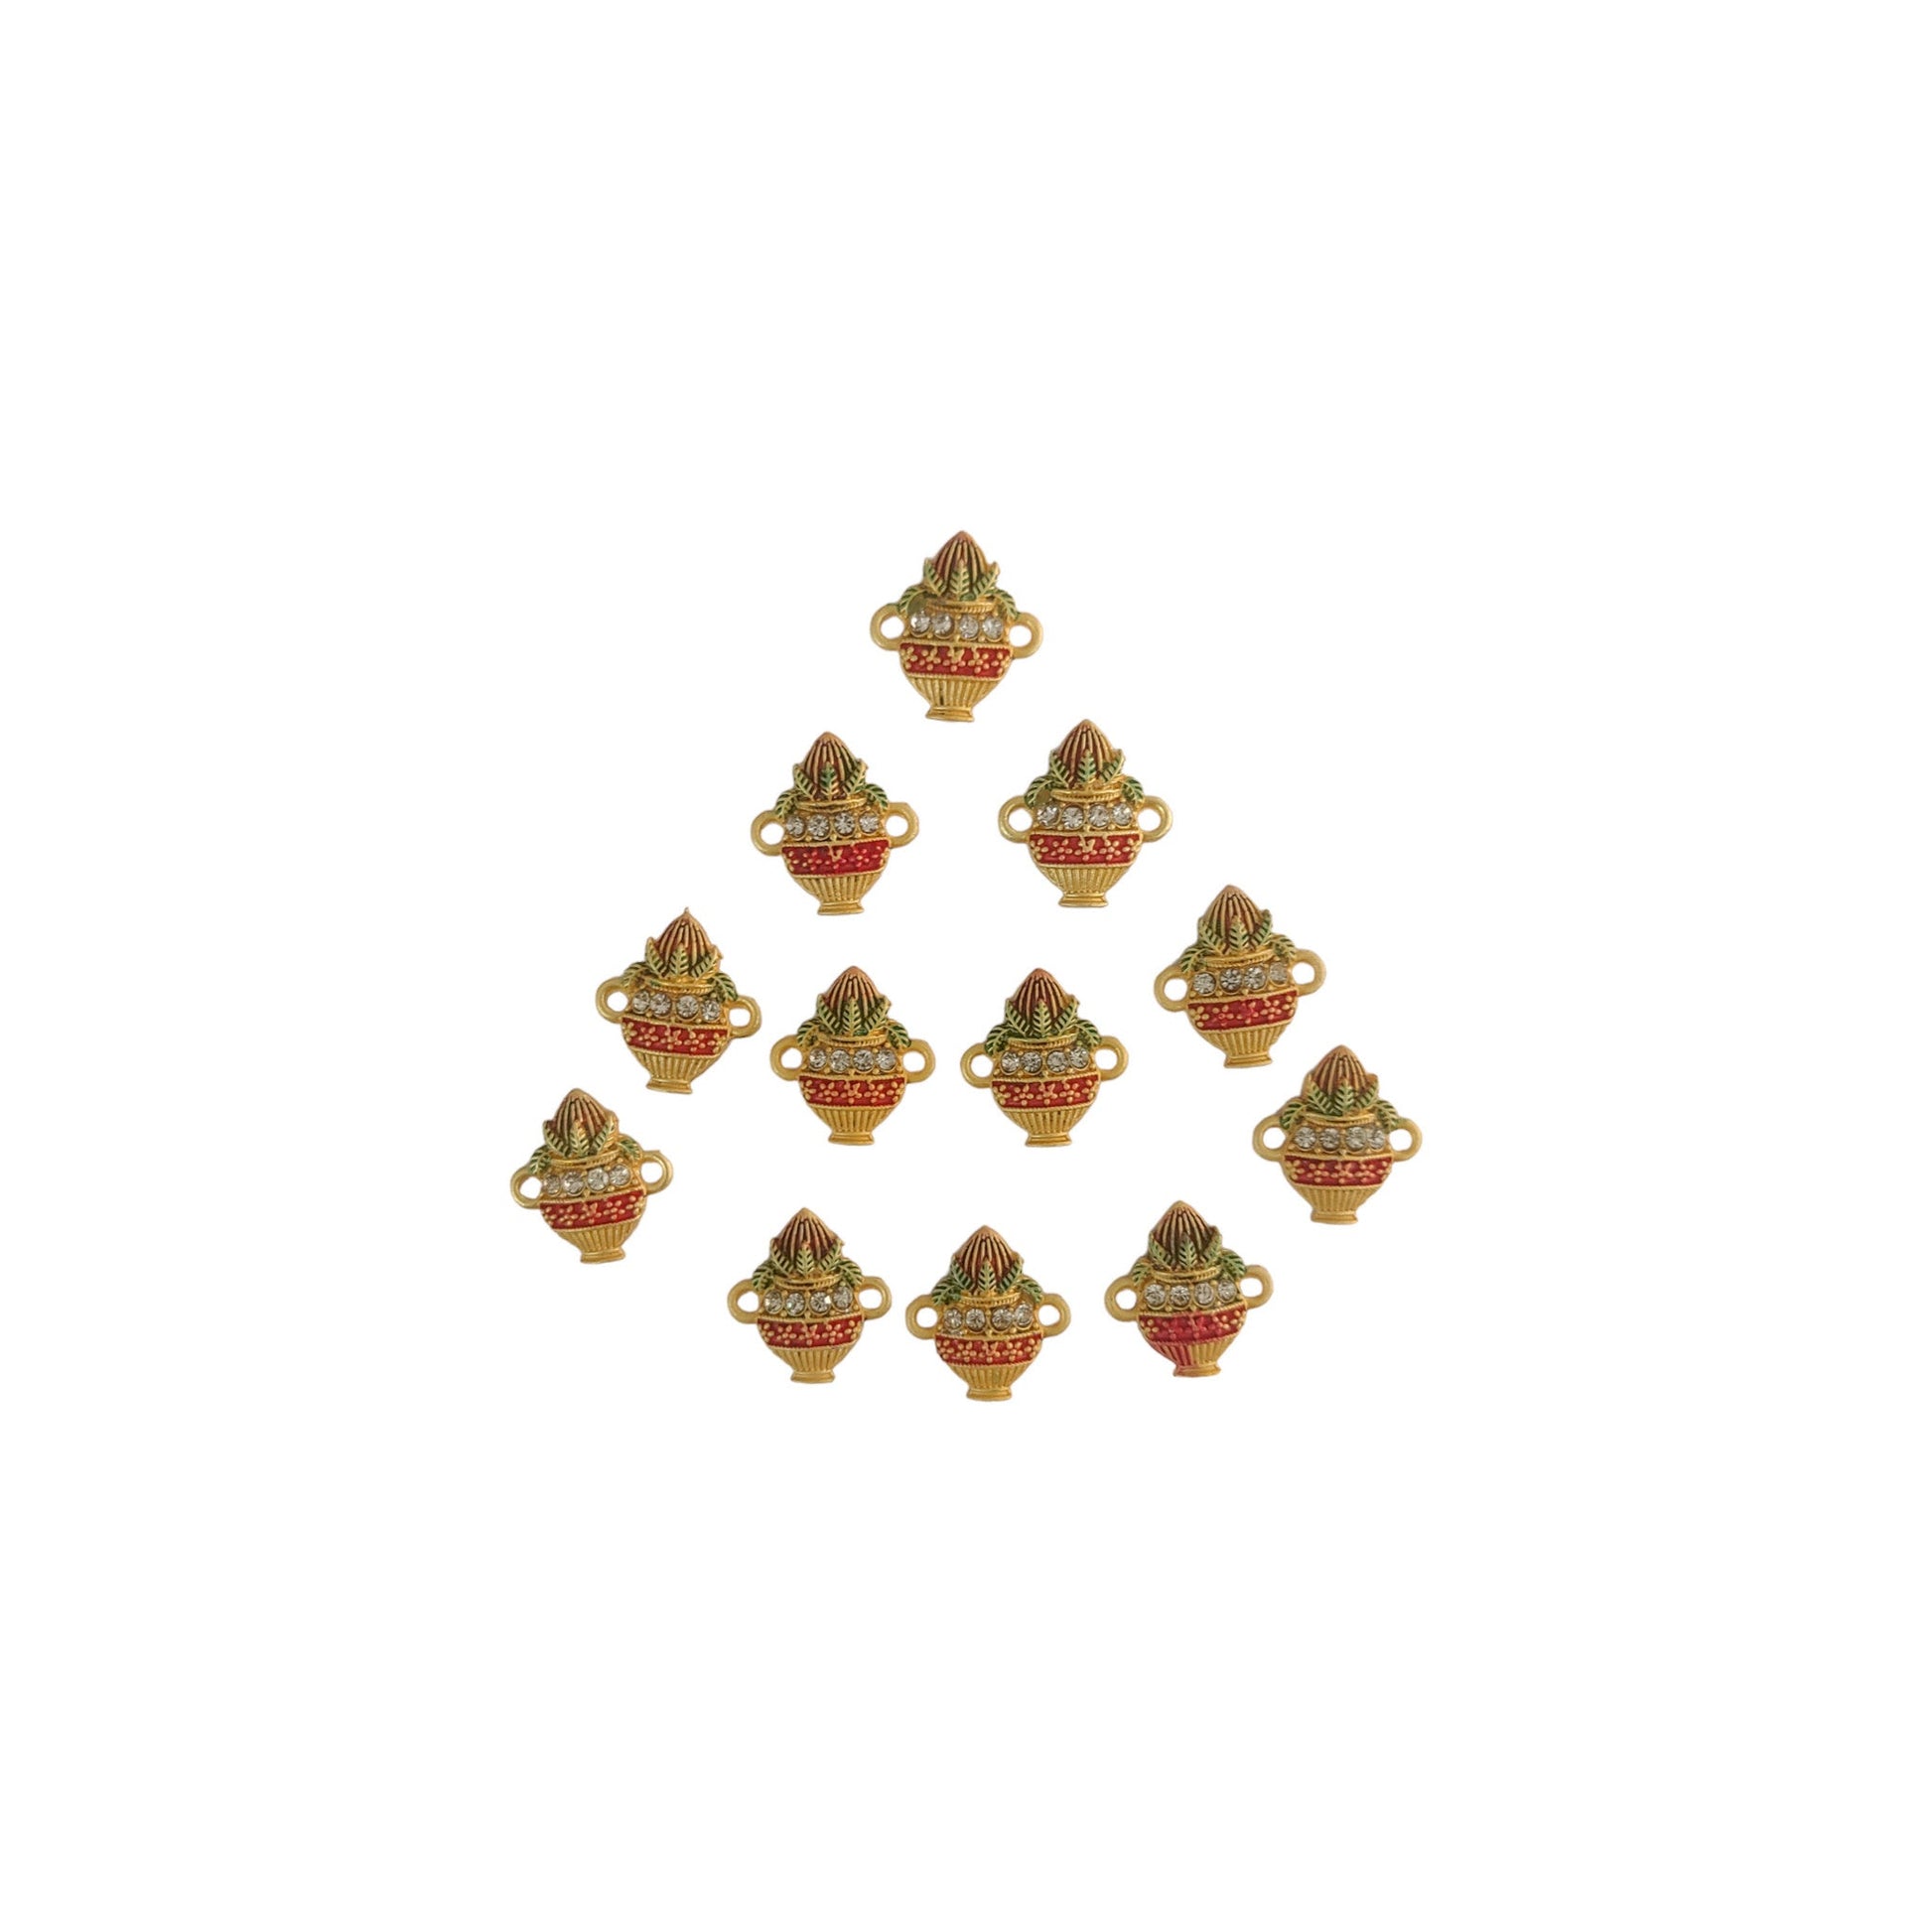 Indian Petals Traditional Kalash Shape Metal Mazak Motif for Rakhi, Jewelry designing and Craft Making or Decor